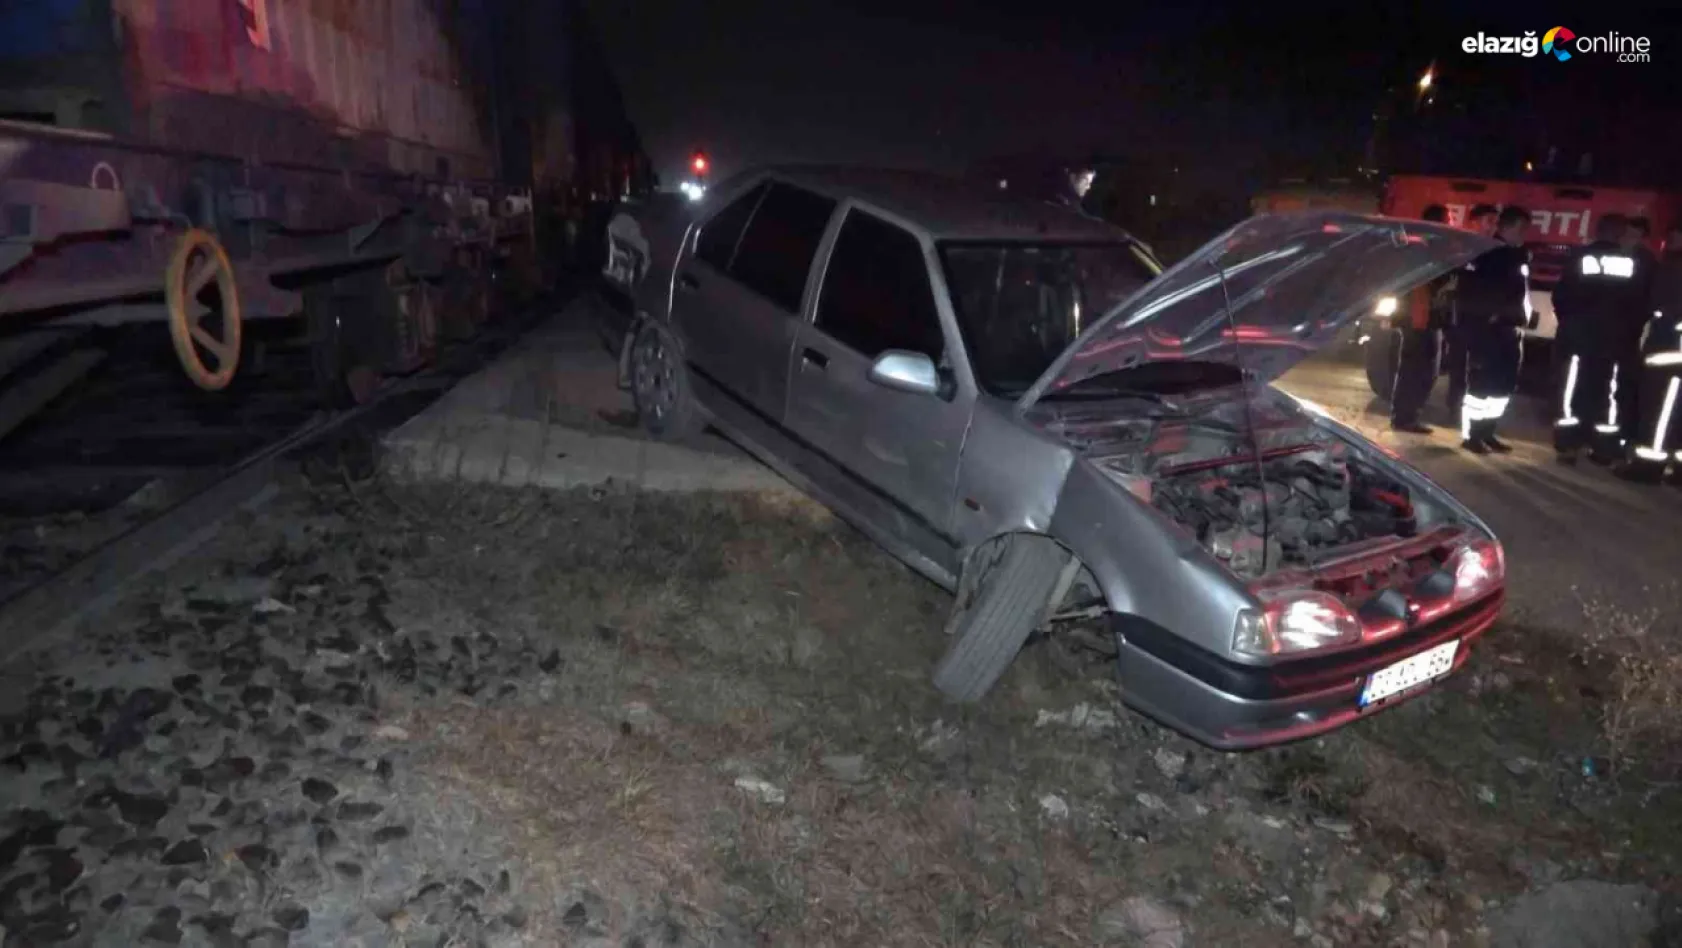 Elazığ'da otomobil trene çarptı